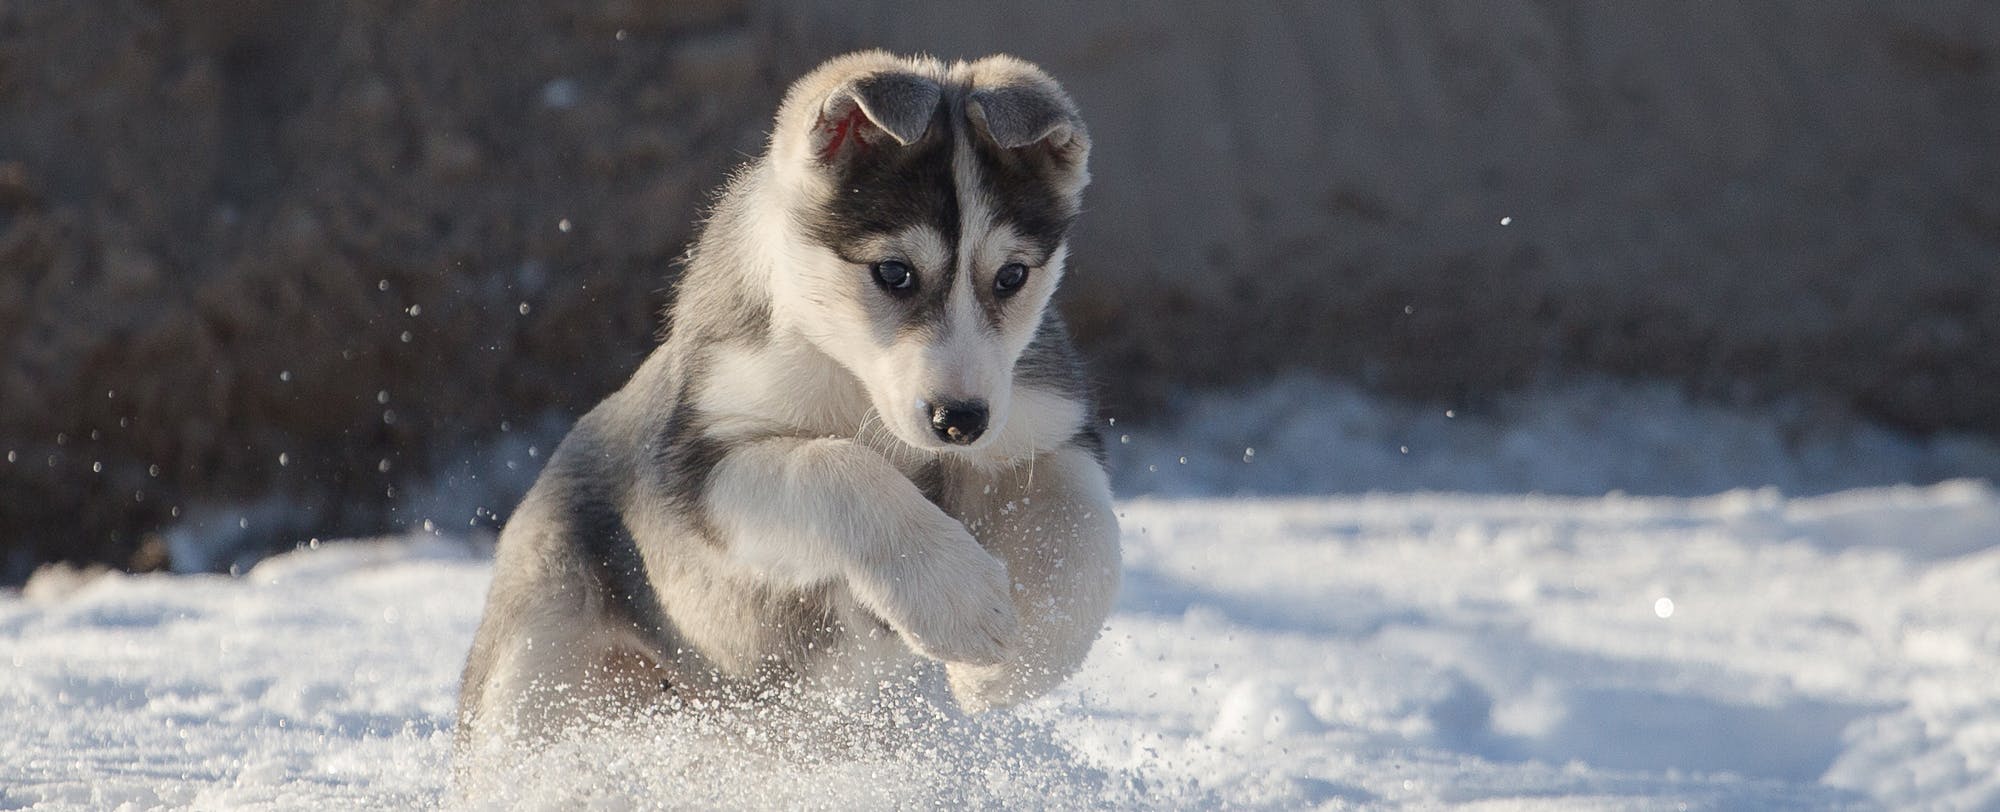 18 Best Winter Dog Breeds 